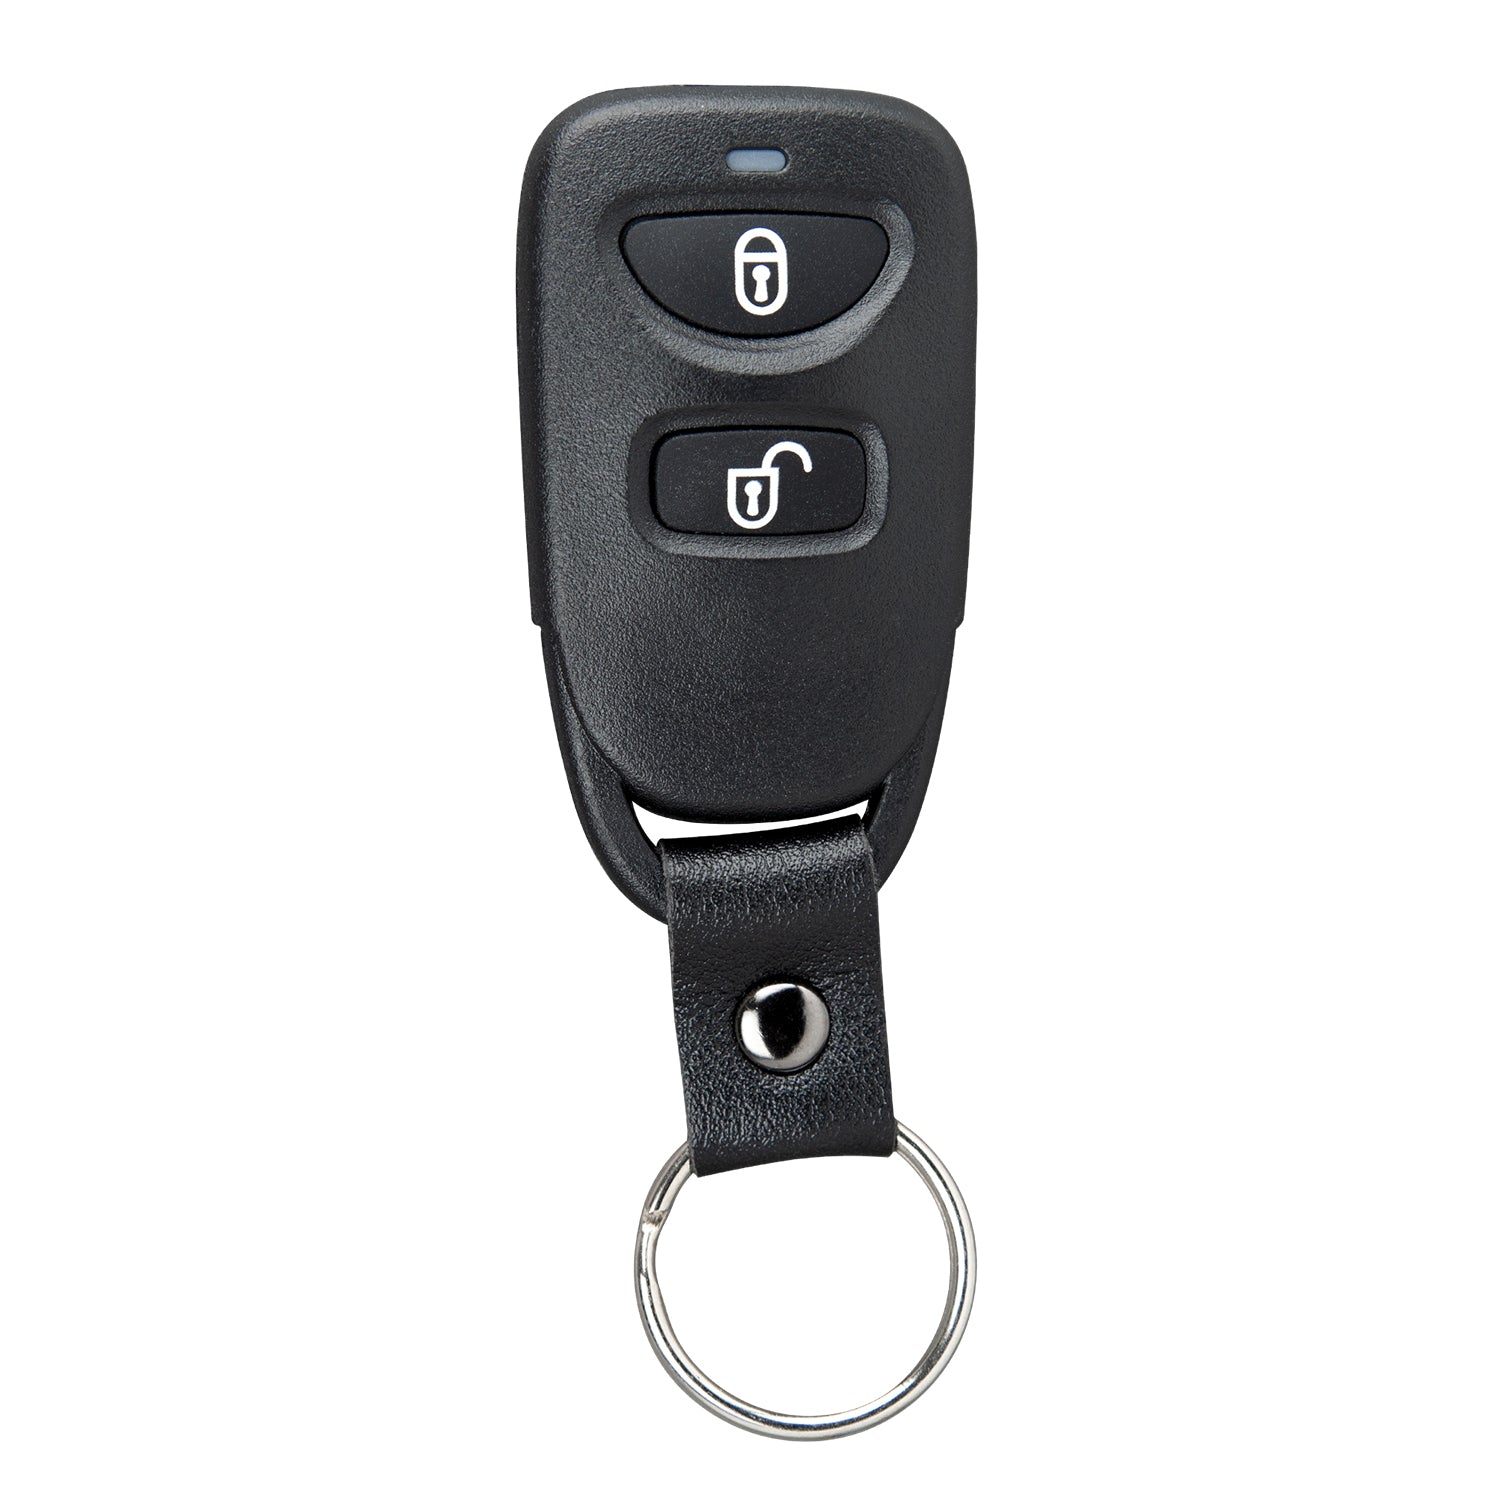 3 Button Remote for Hyundai Tucson 2005 2006 2007 2008 2009 2010 2011 2012 2013 2014 2015 OSLOKA-320T 315 Mhz